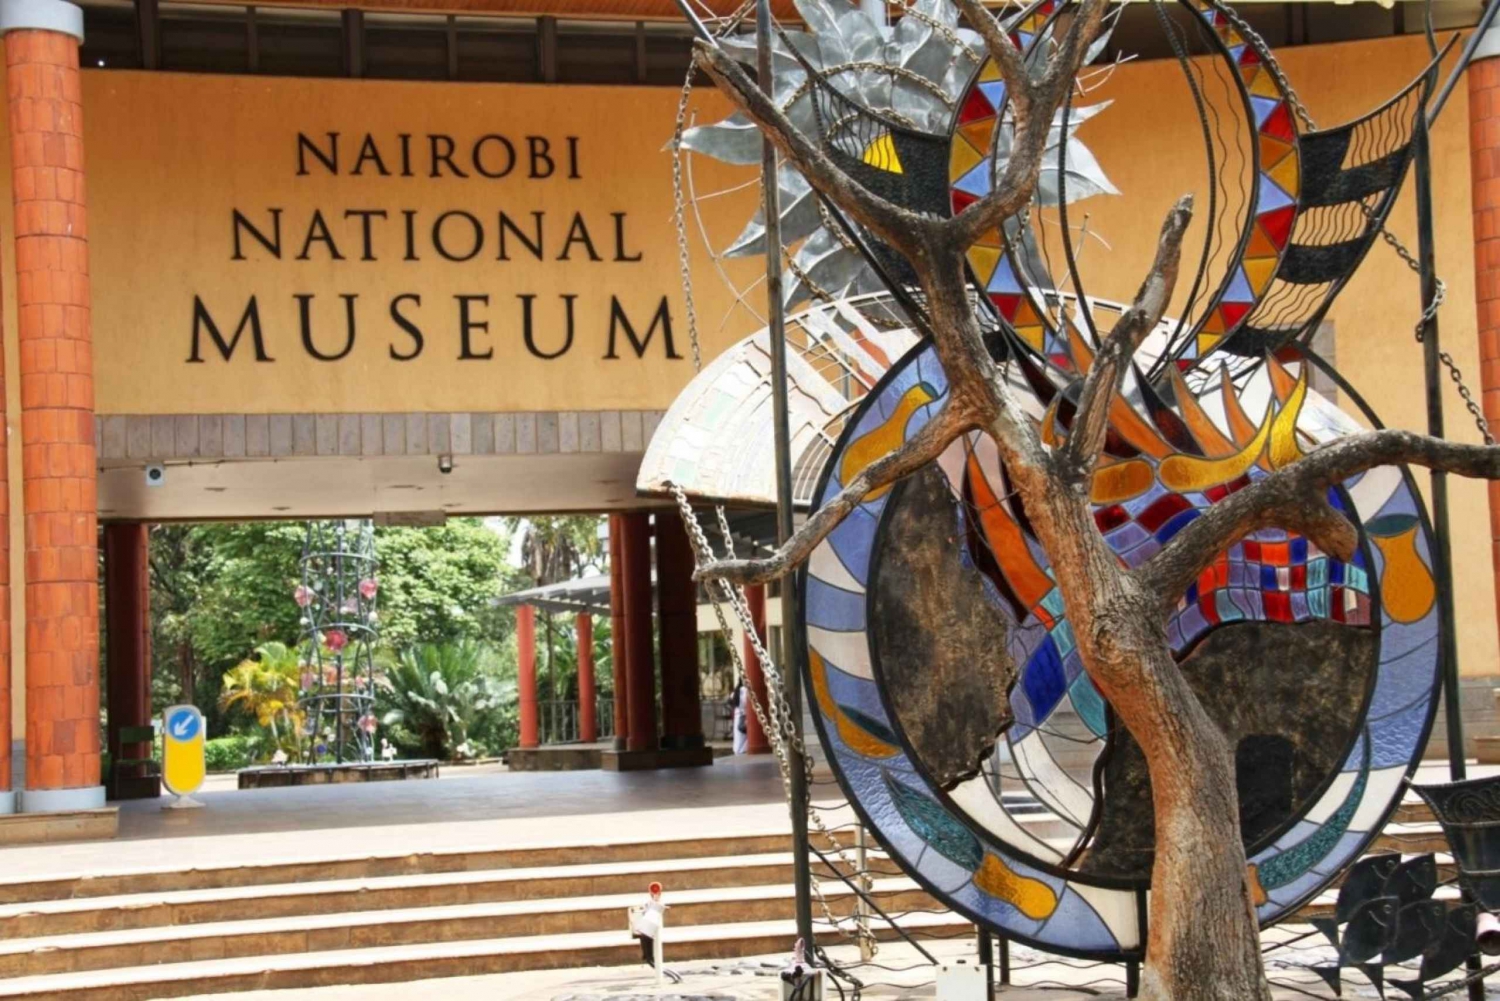 Mellomlanding på Nairobi lufthavn: Omvisning på Nairobis nasjonalmuseum